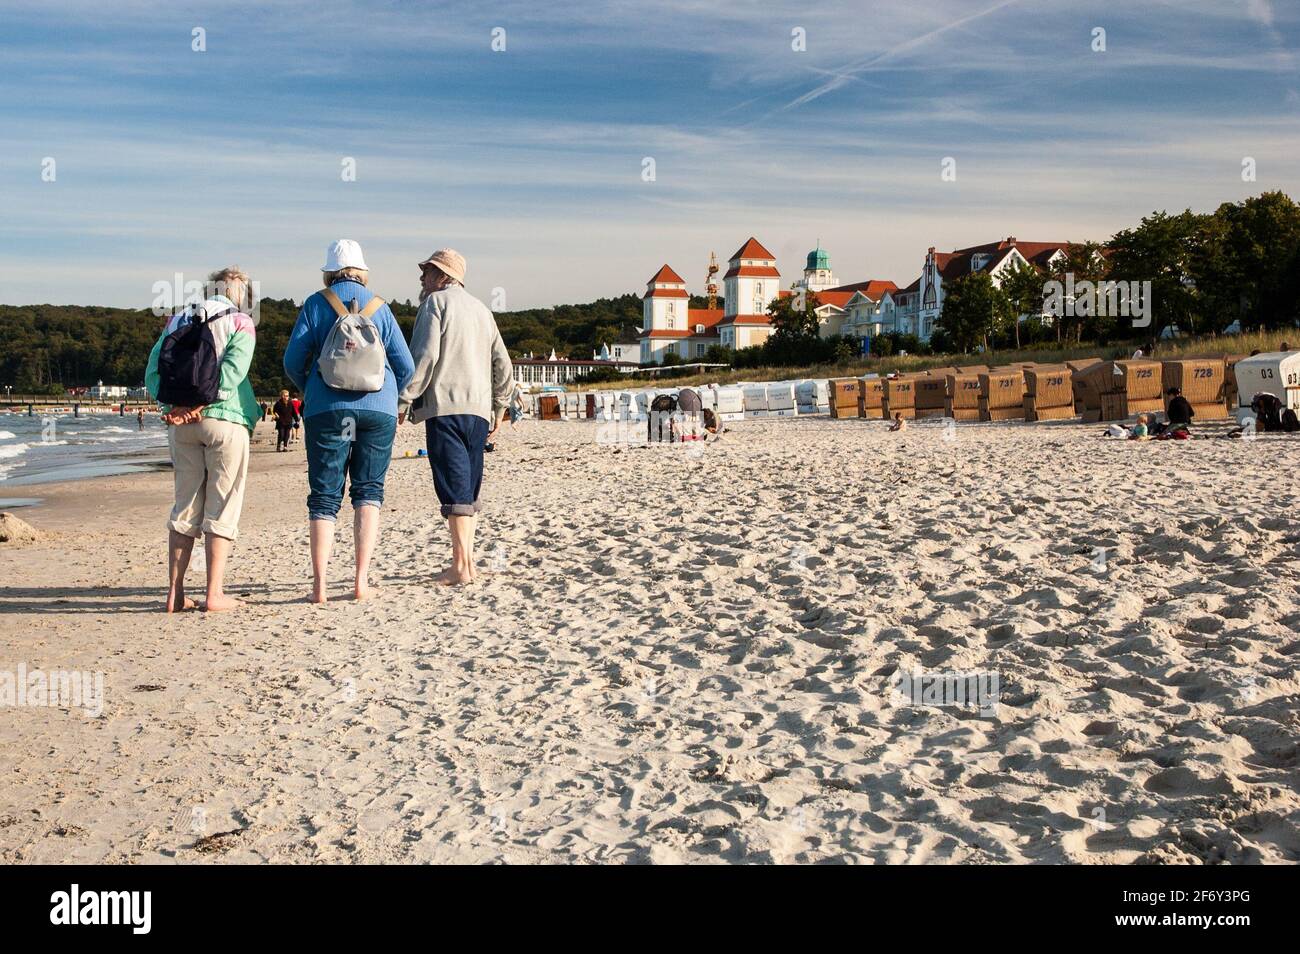 Drei Damen am Strand von Binz: Das Seebad auf Rügen ist ein beliebtes Ausflugsziel mit zahlreichen Hotels und einem belebten Strand - three ladies at Binz beach: the seaside resort is a popular tourist-spot with numerous hotels and a wide sandy beach. Stock Photo